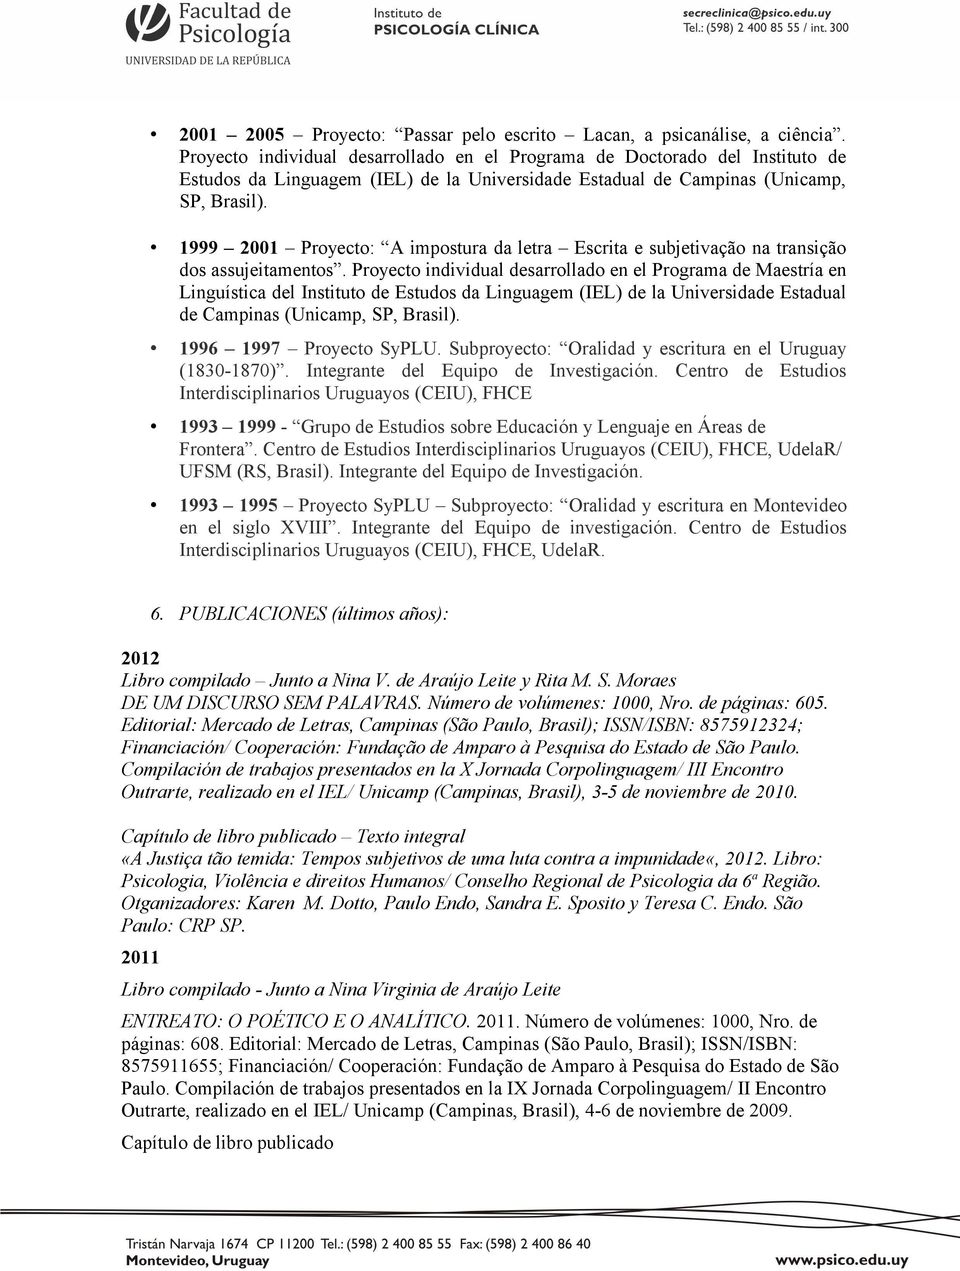 1999 2001 Proyecto: A impostura da letra Escrita e subjetivação na transição dos assujeitamentos.